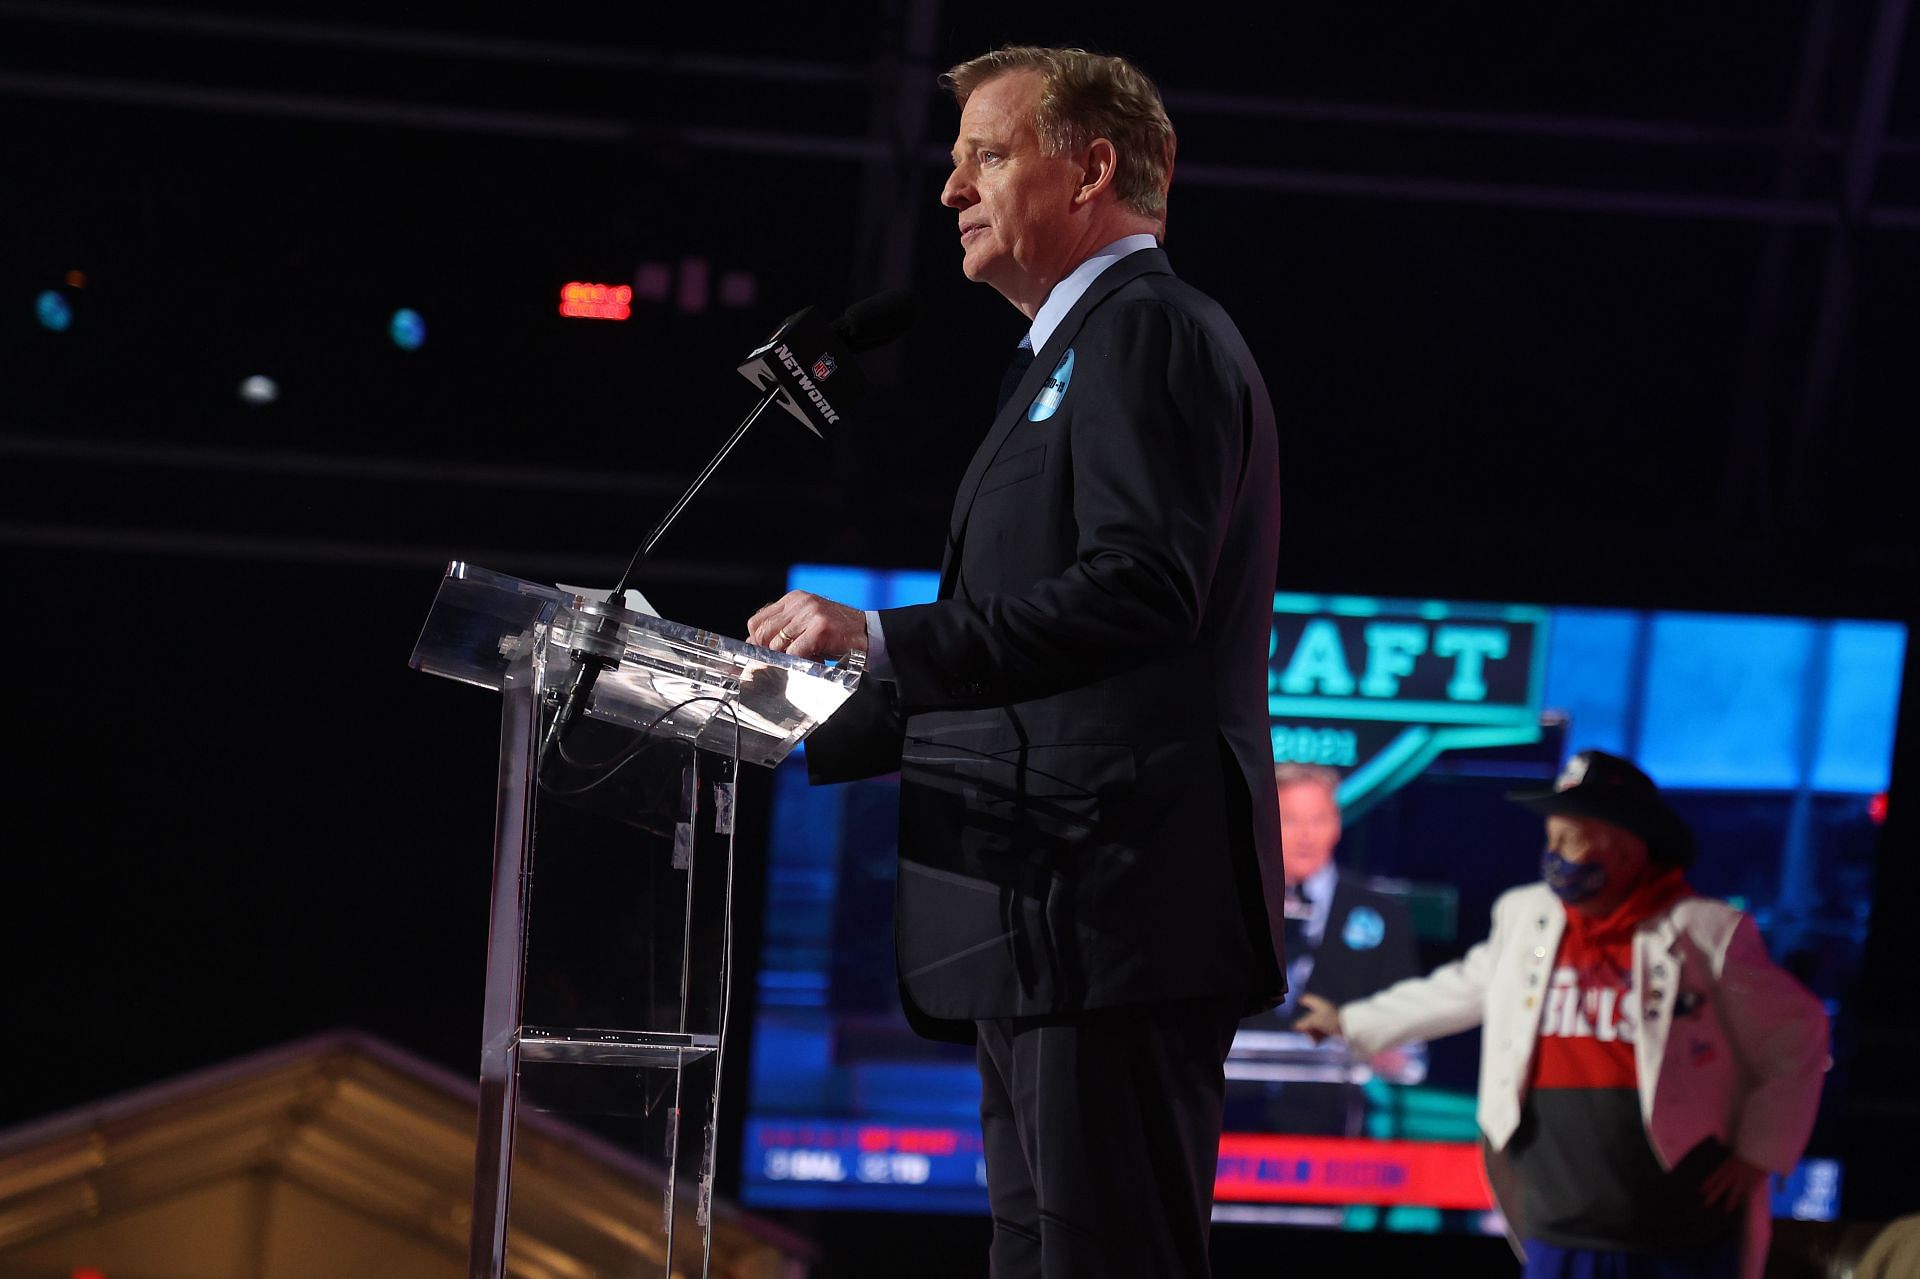 2021 NFL Draft - Commissioner Roger Goodell